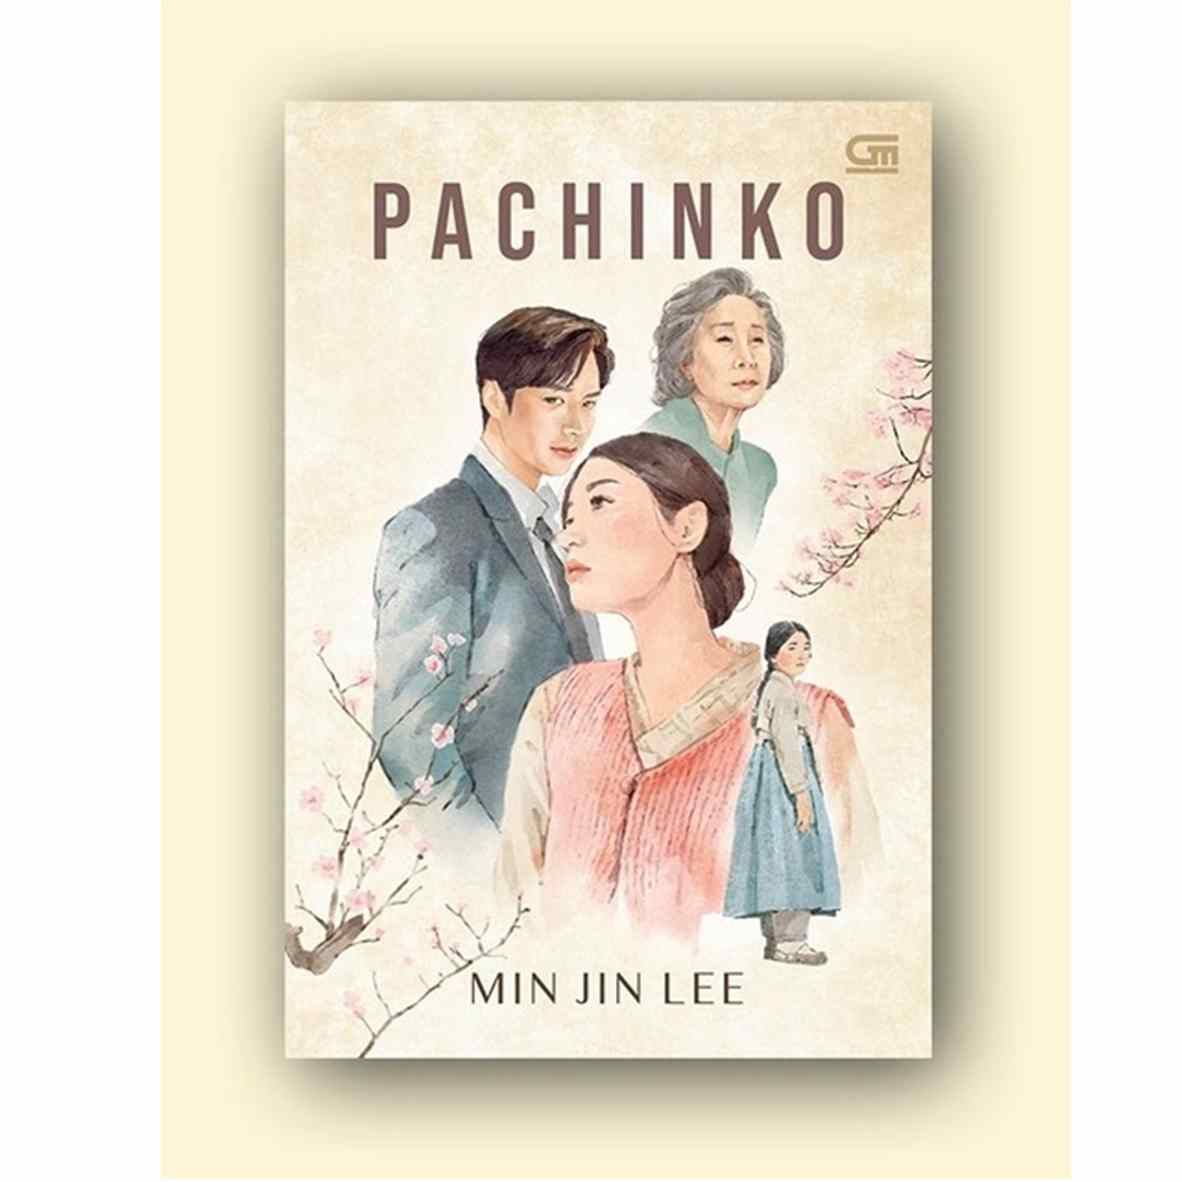 Ringkasan Cerita Pachinko Karya Min Jin Lee, Lengkap Amanat Cerita